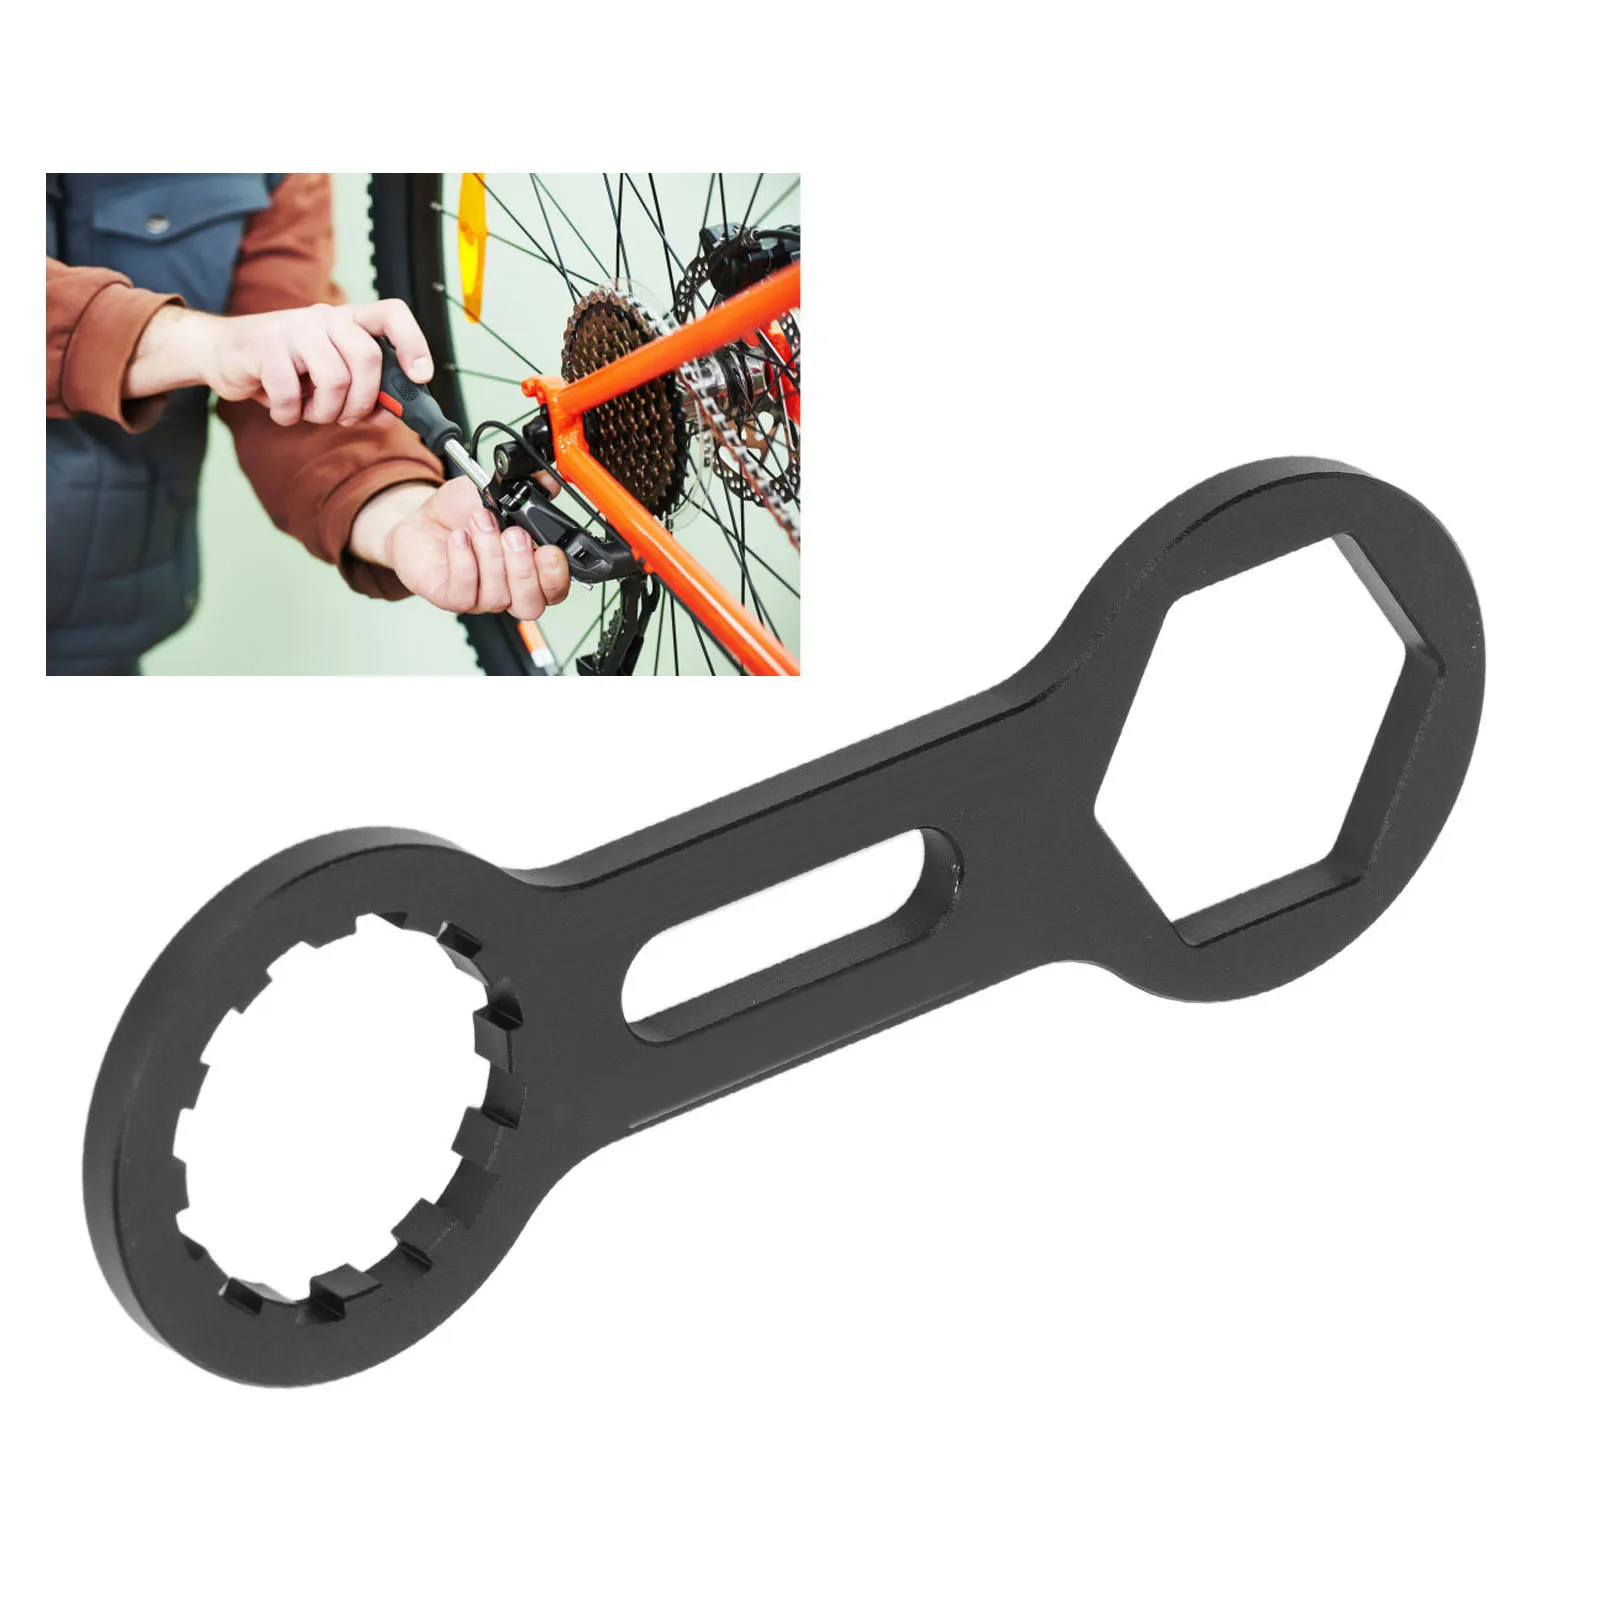 

Гаечный ключ для разборки передней оси велосипеда из алюминиевого сплава для ремонта гидравлической механической вилки